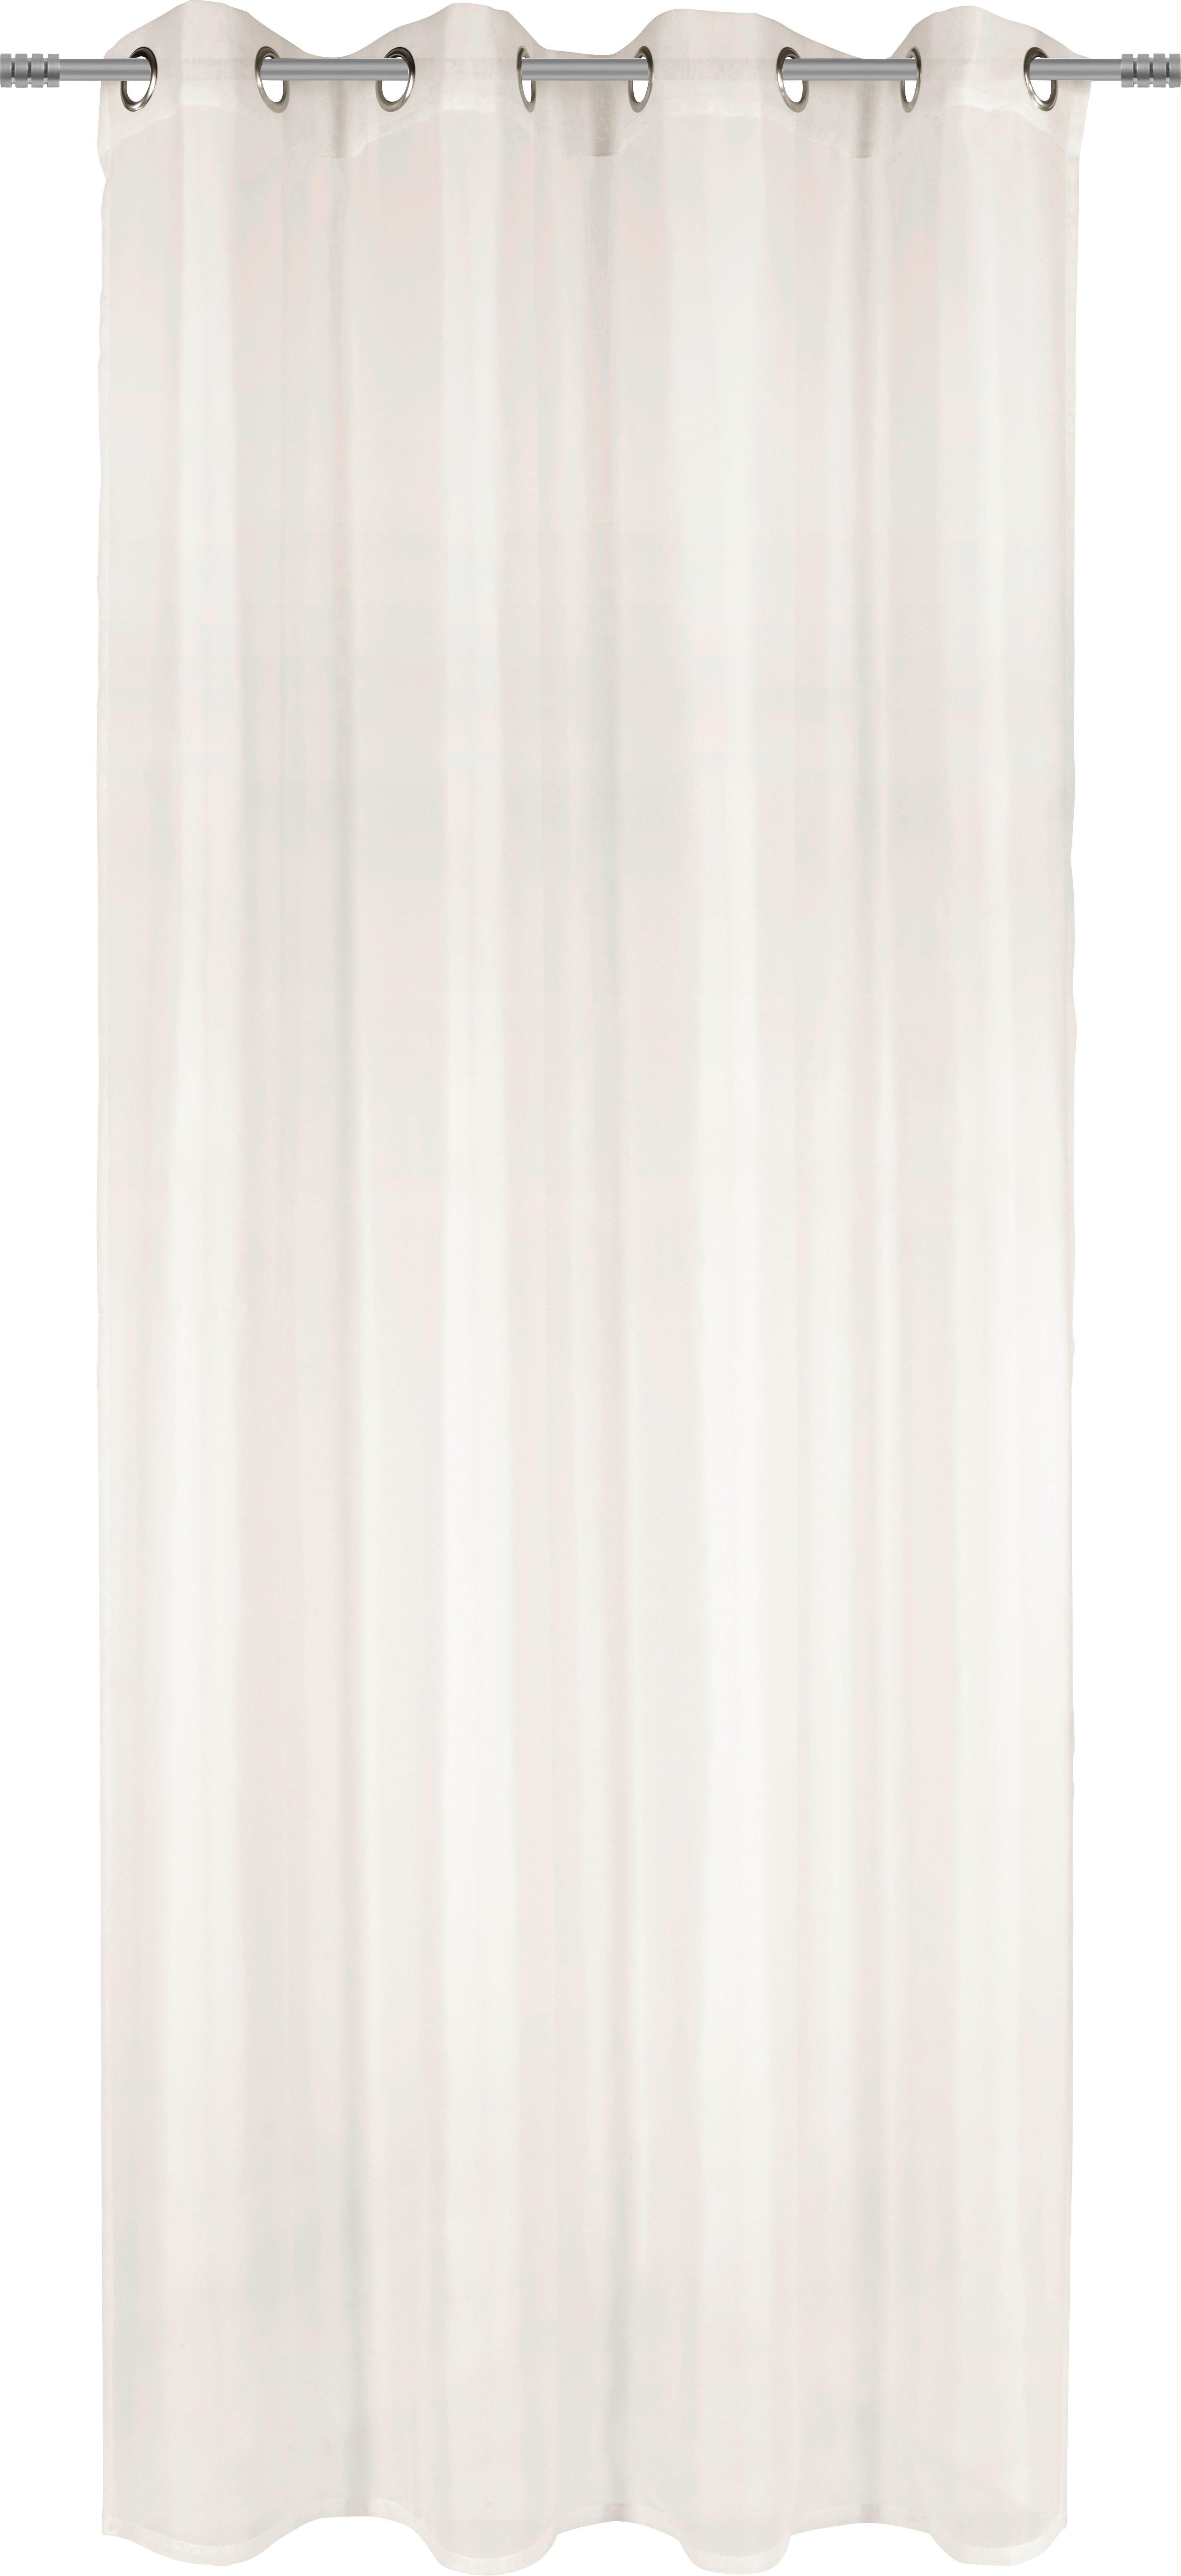 PERDEA CU INELE TIP CAPSĂ transparent  - culoare natur, Basics, textil (140/245cm) - Boxxx